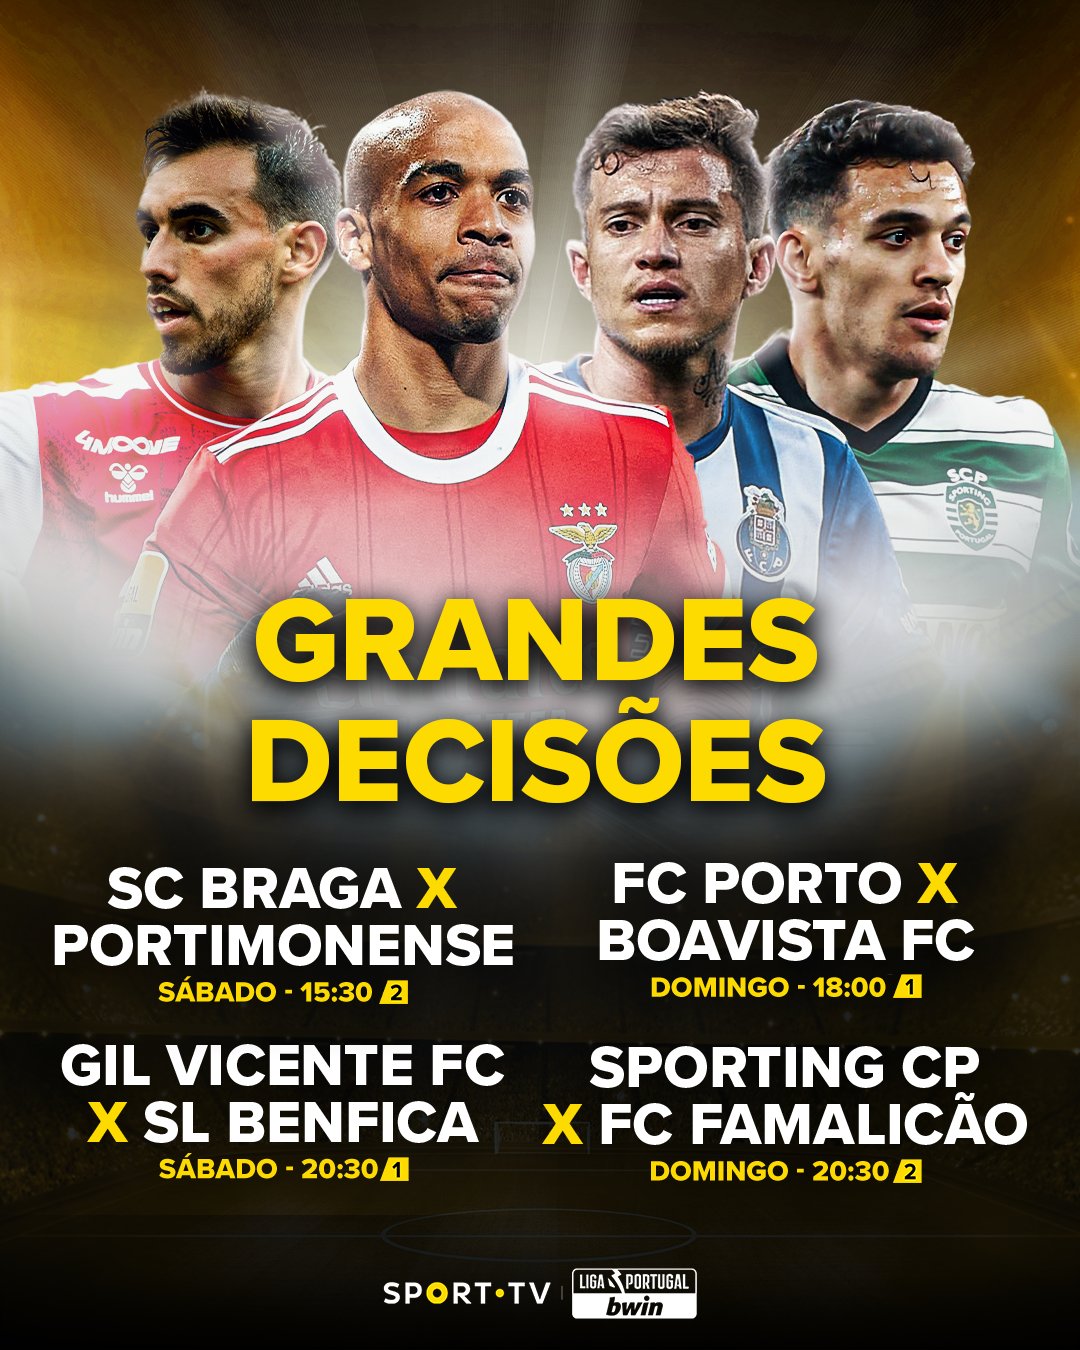 sport tv on X: Estes são os participantes na próxima Liga Portugal SABSEG.  De que zona sentes falta? 🫵 #sporttvportugal #LIGAnaSPORTTV #ligaportugal  #ligaportugalsabseg  / X